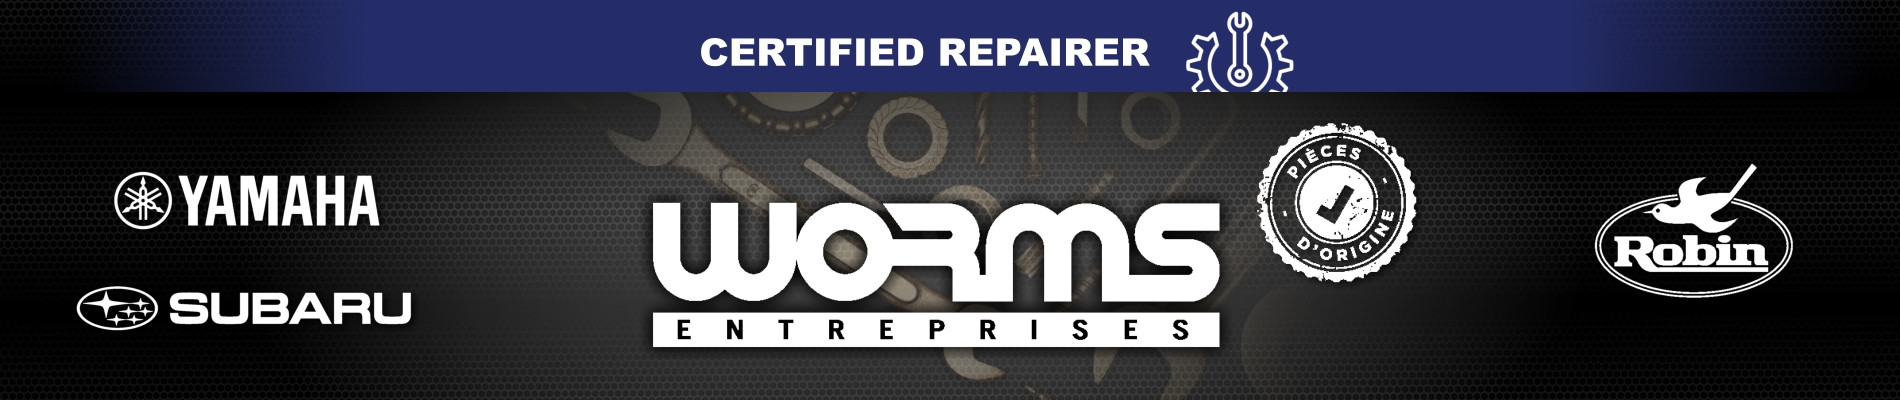 Worns certified repairer